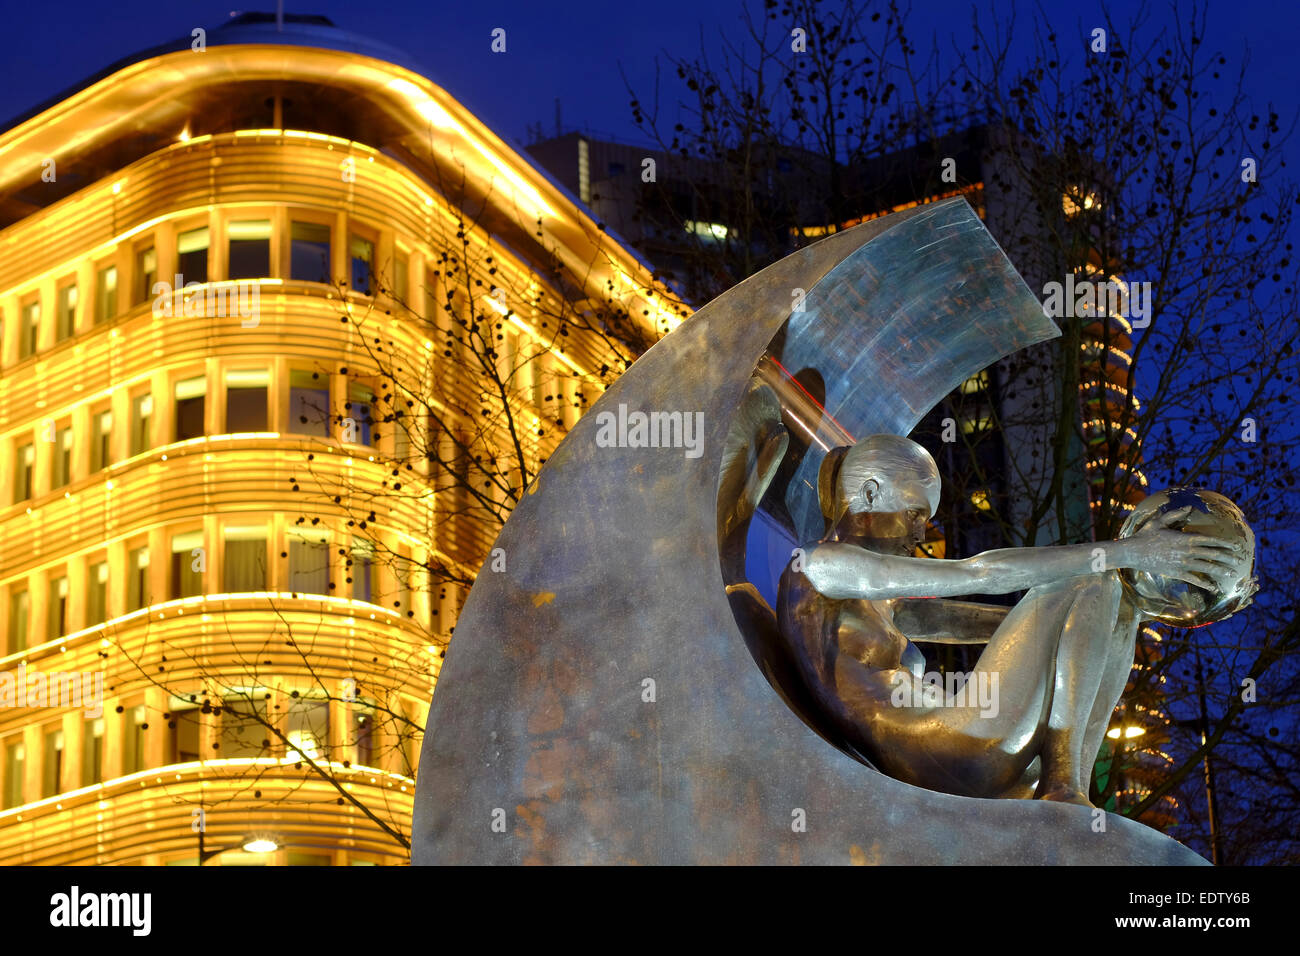 Yin Yang metal sculpture at night on Park Lane, London Stock Photo